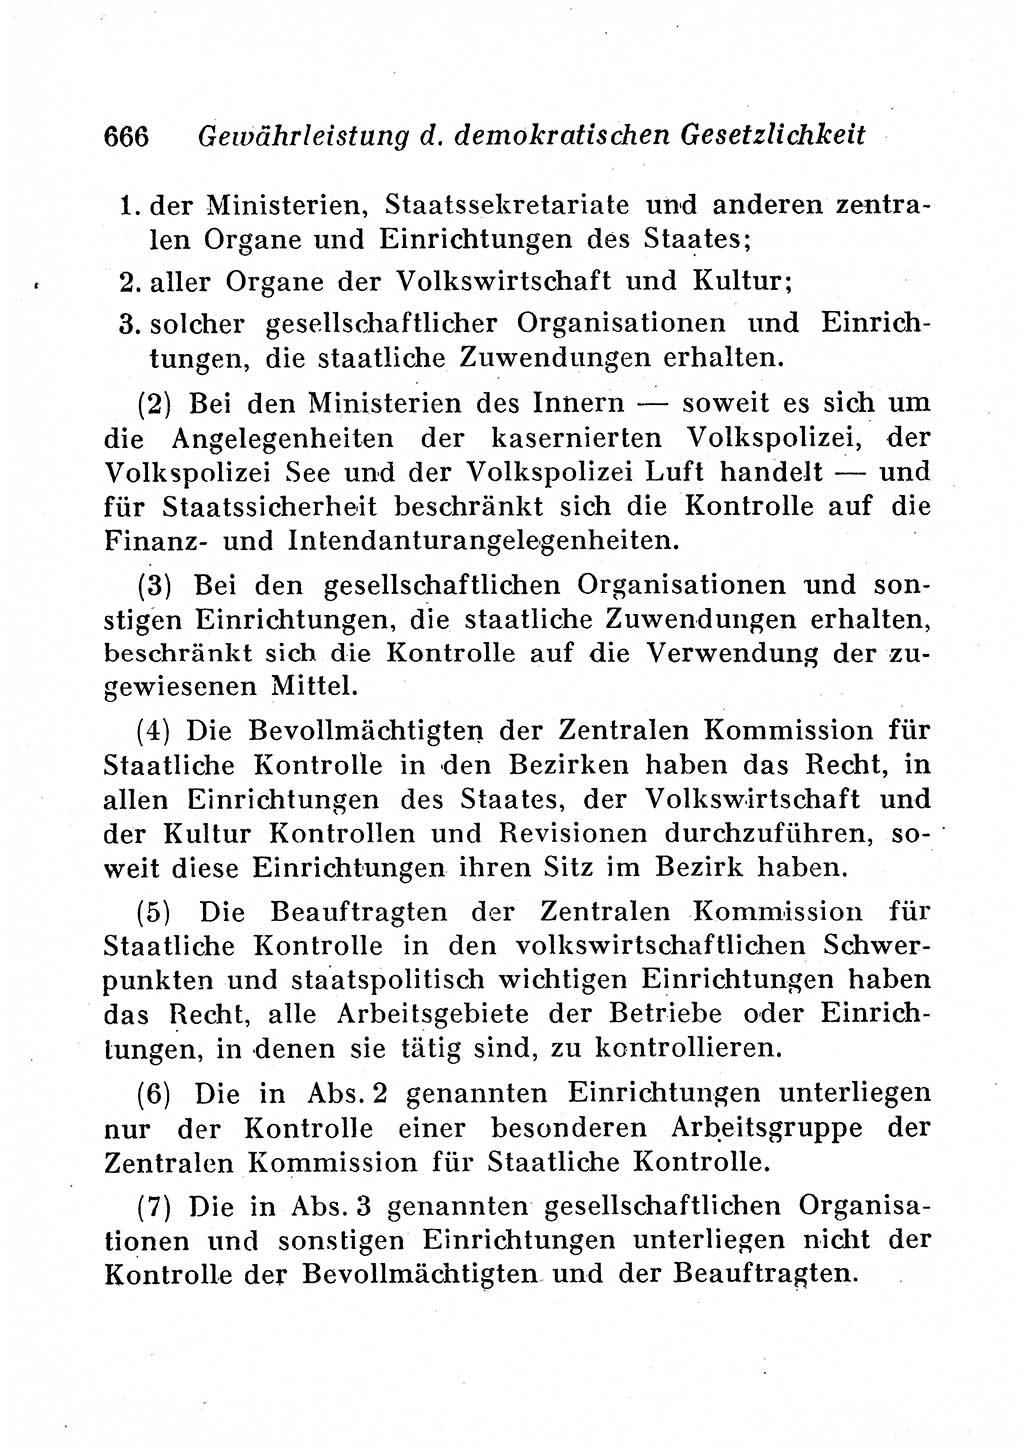 Staats- und verwaltungsrechtliche Gesetze der Deutschen Demokratischen Republik (DDR) 1958, Seite 666 (StVerwR Ges. DDR 1958, S. 666)